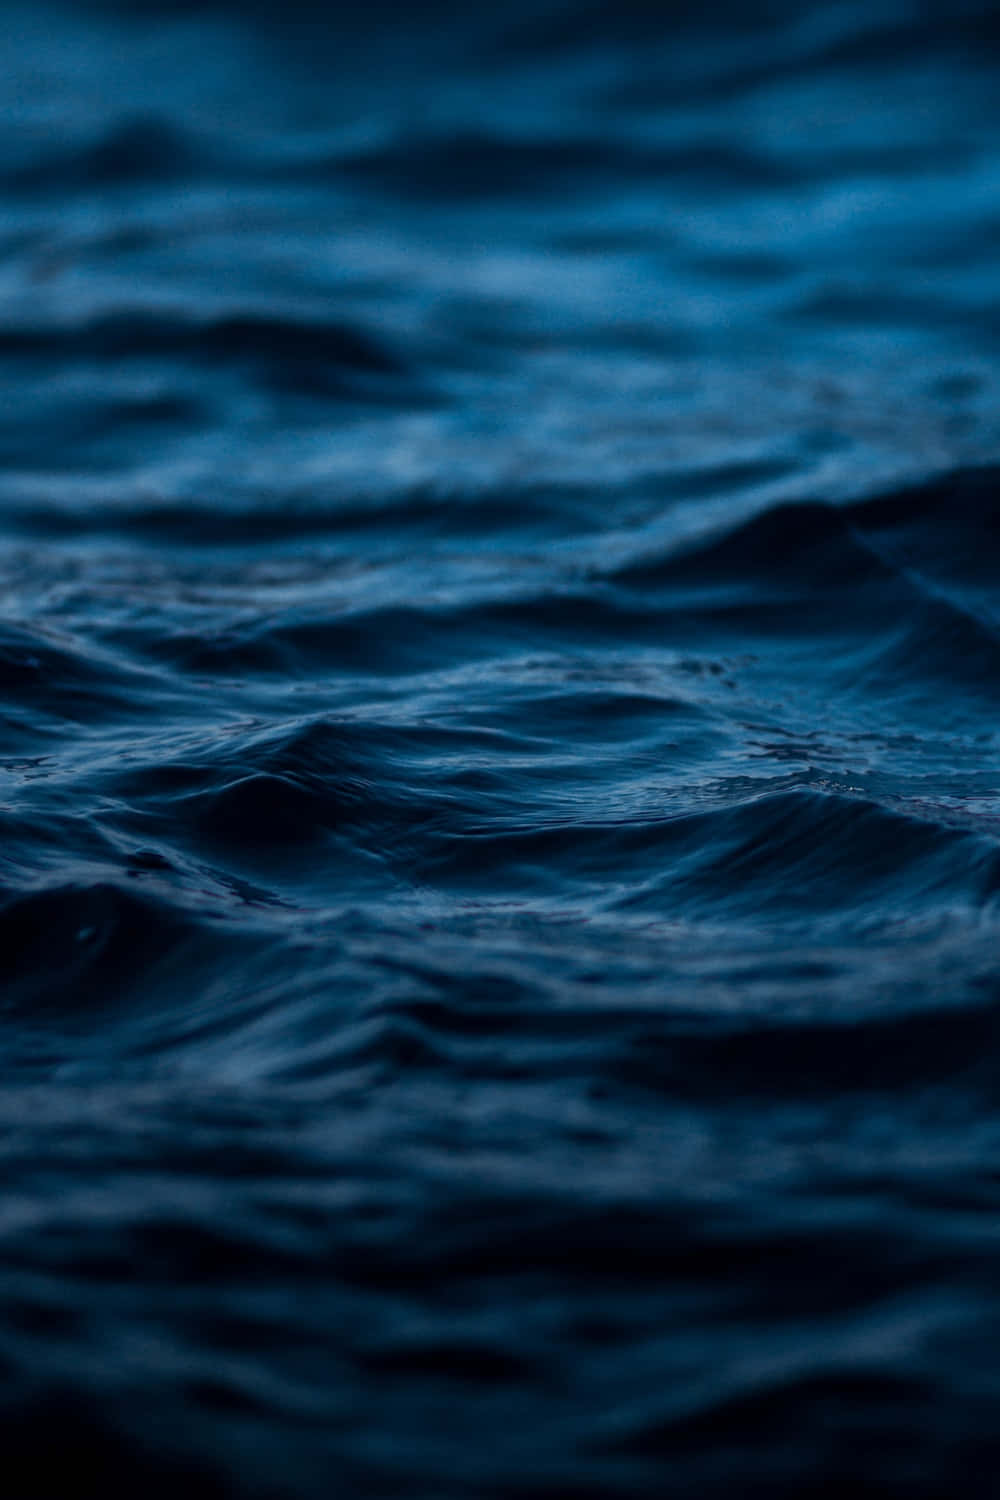 Umapraia Tranquila Coberta Por Um Sereno Tom De Azul Do Oceano.